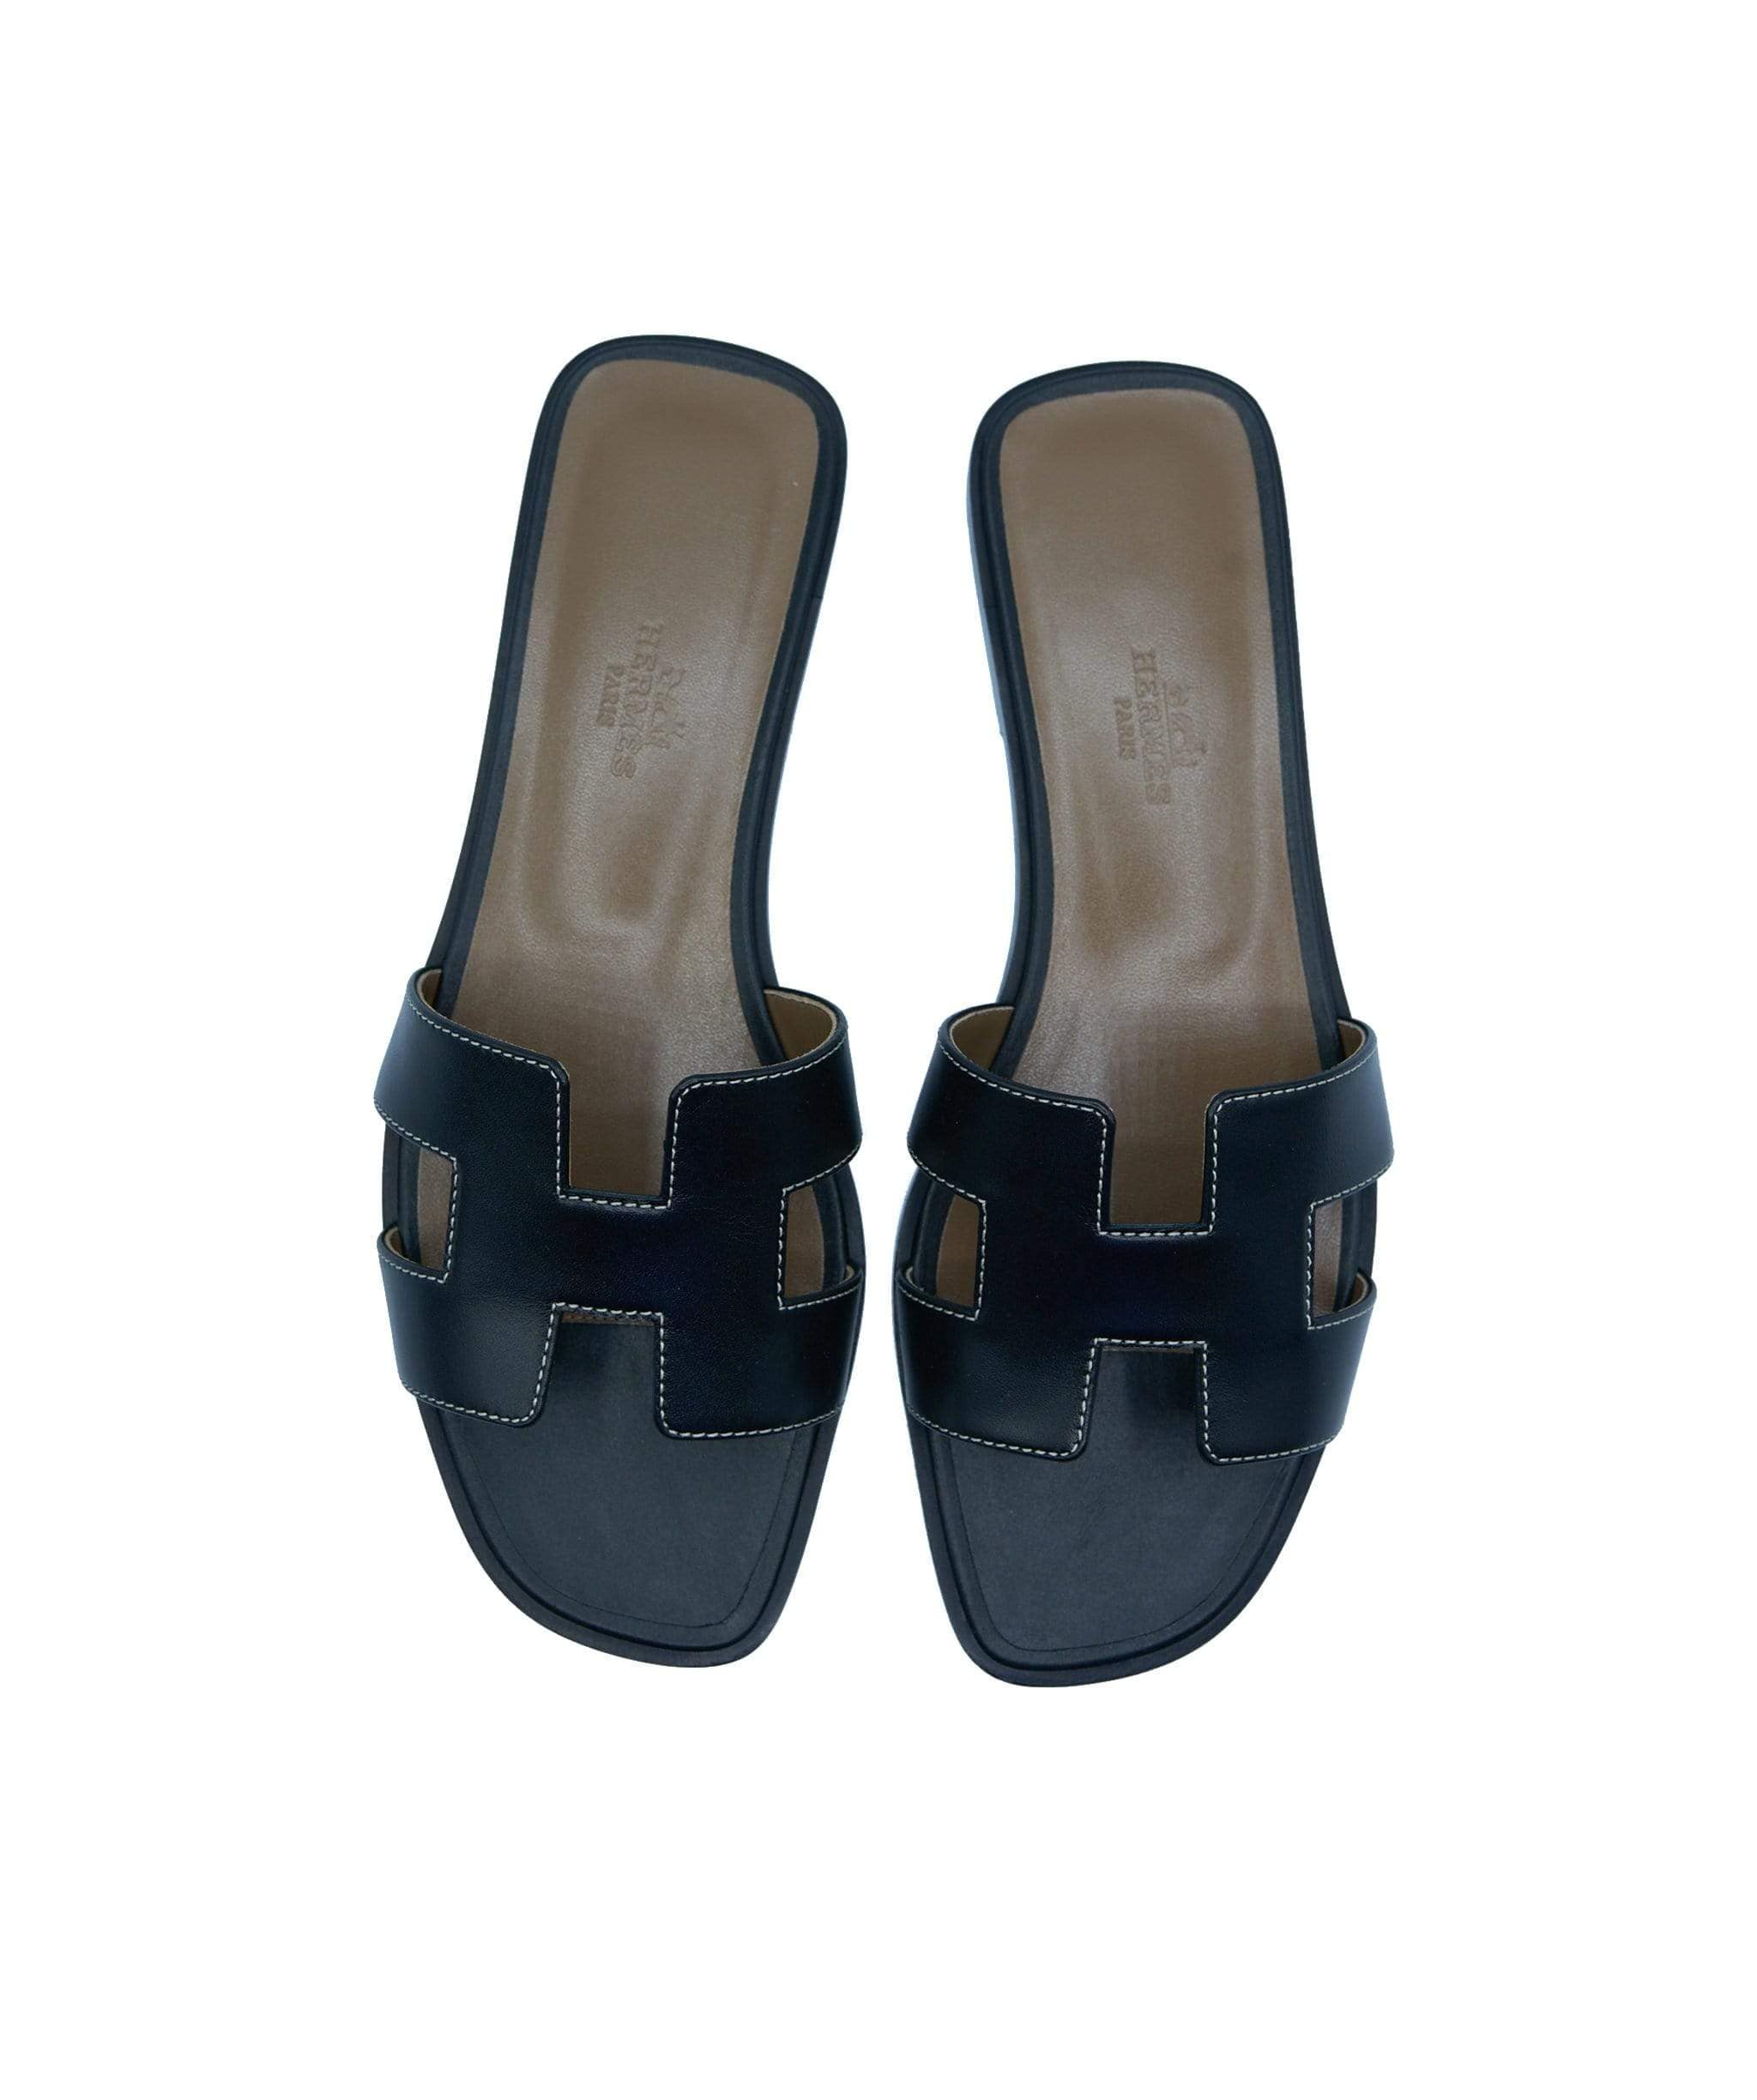 LuxuryPromise Hermes oran sandals 36.5